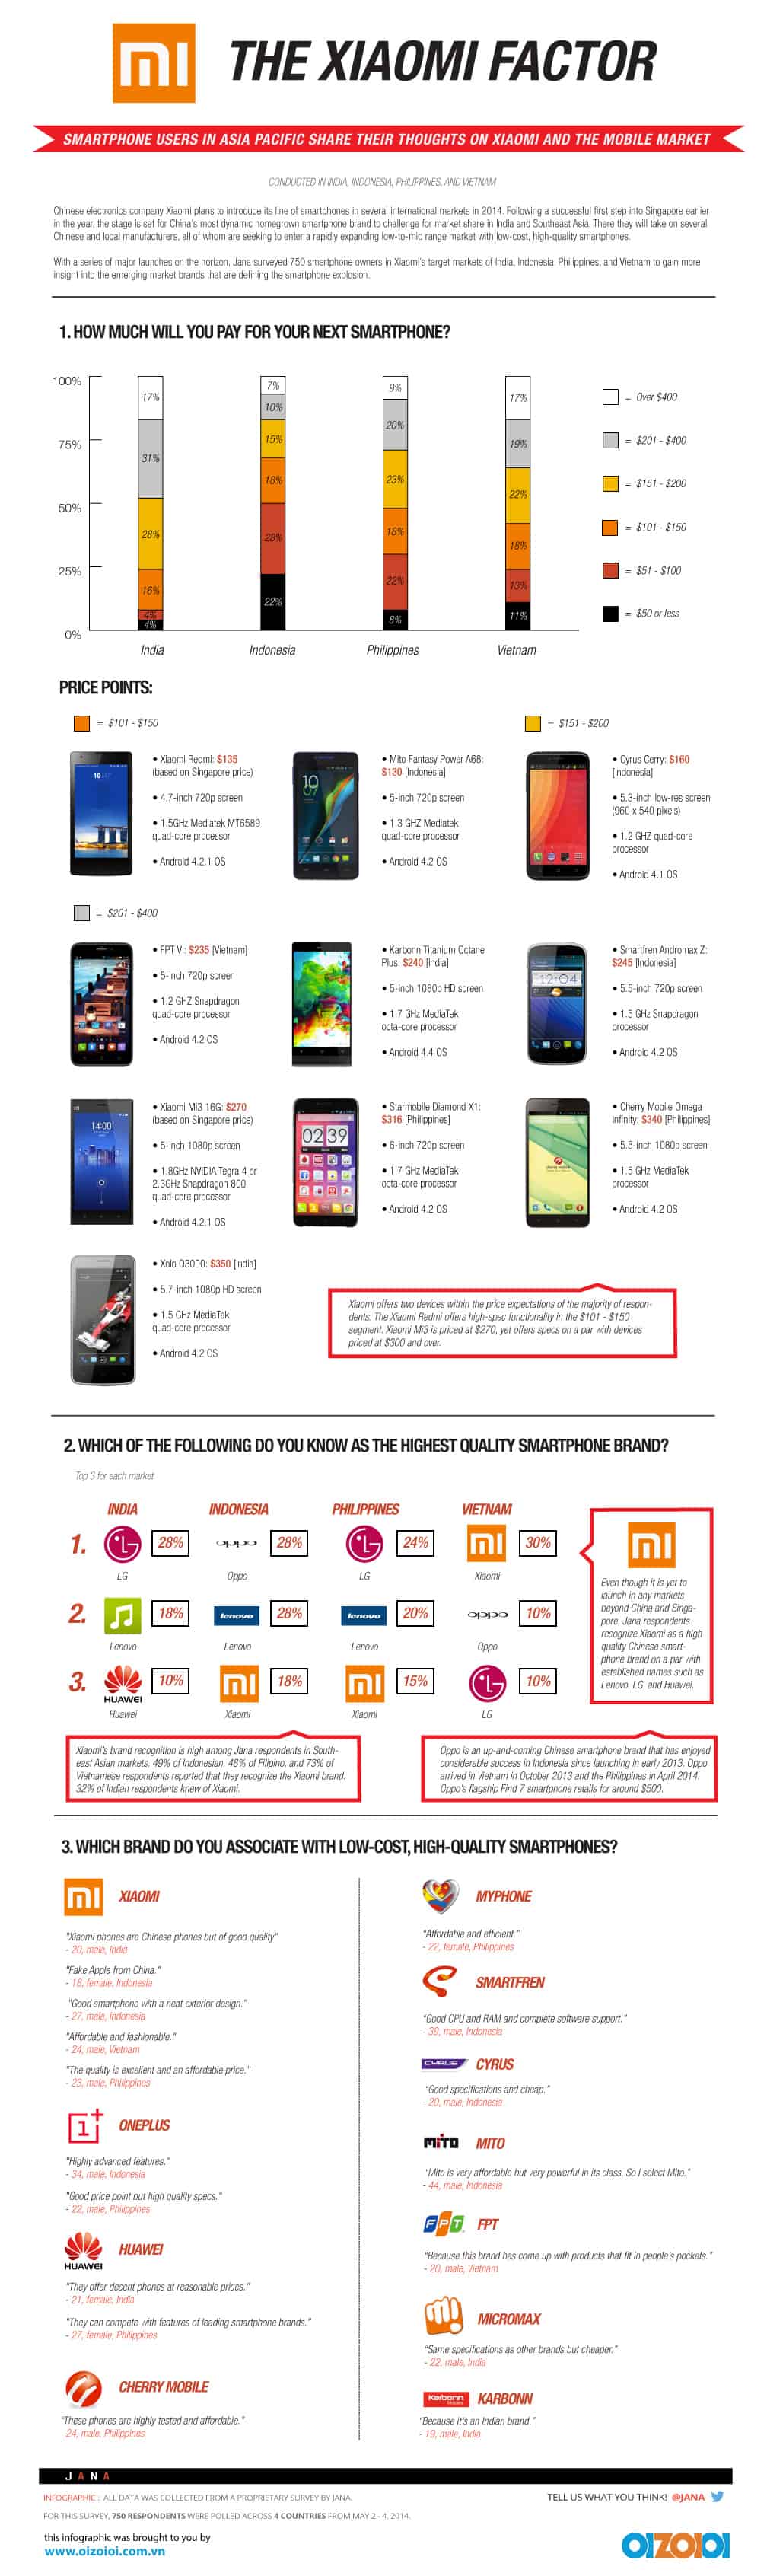 Xiaomi Infographic